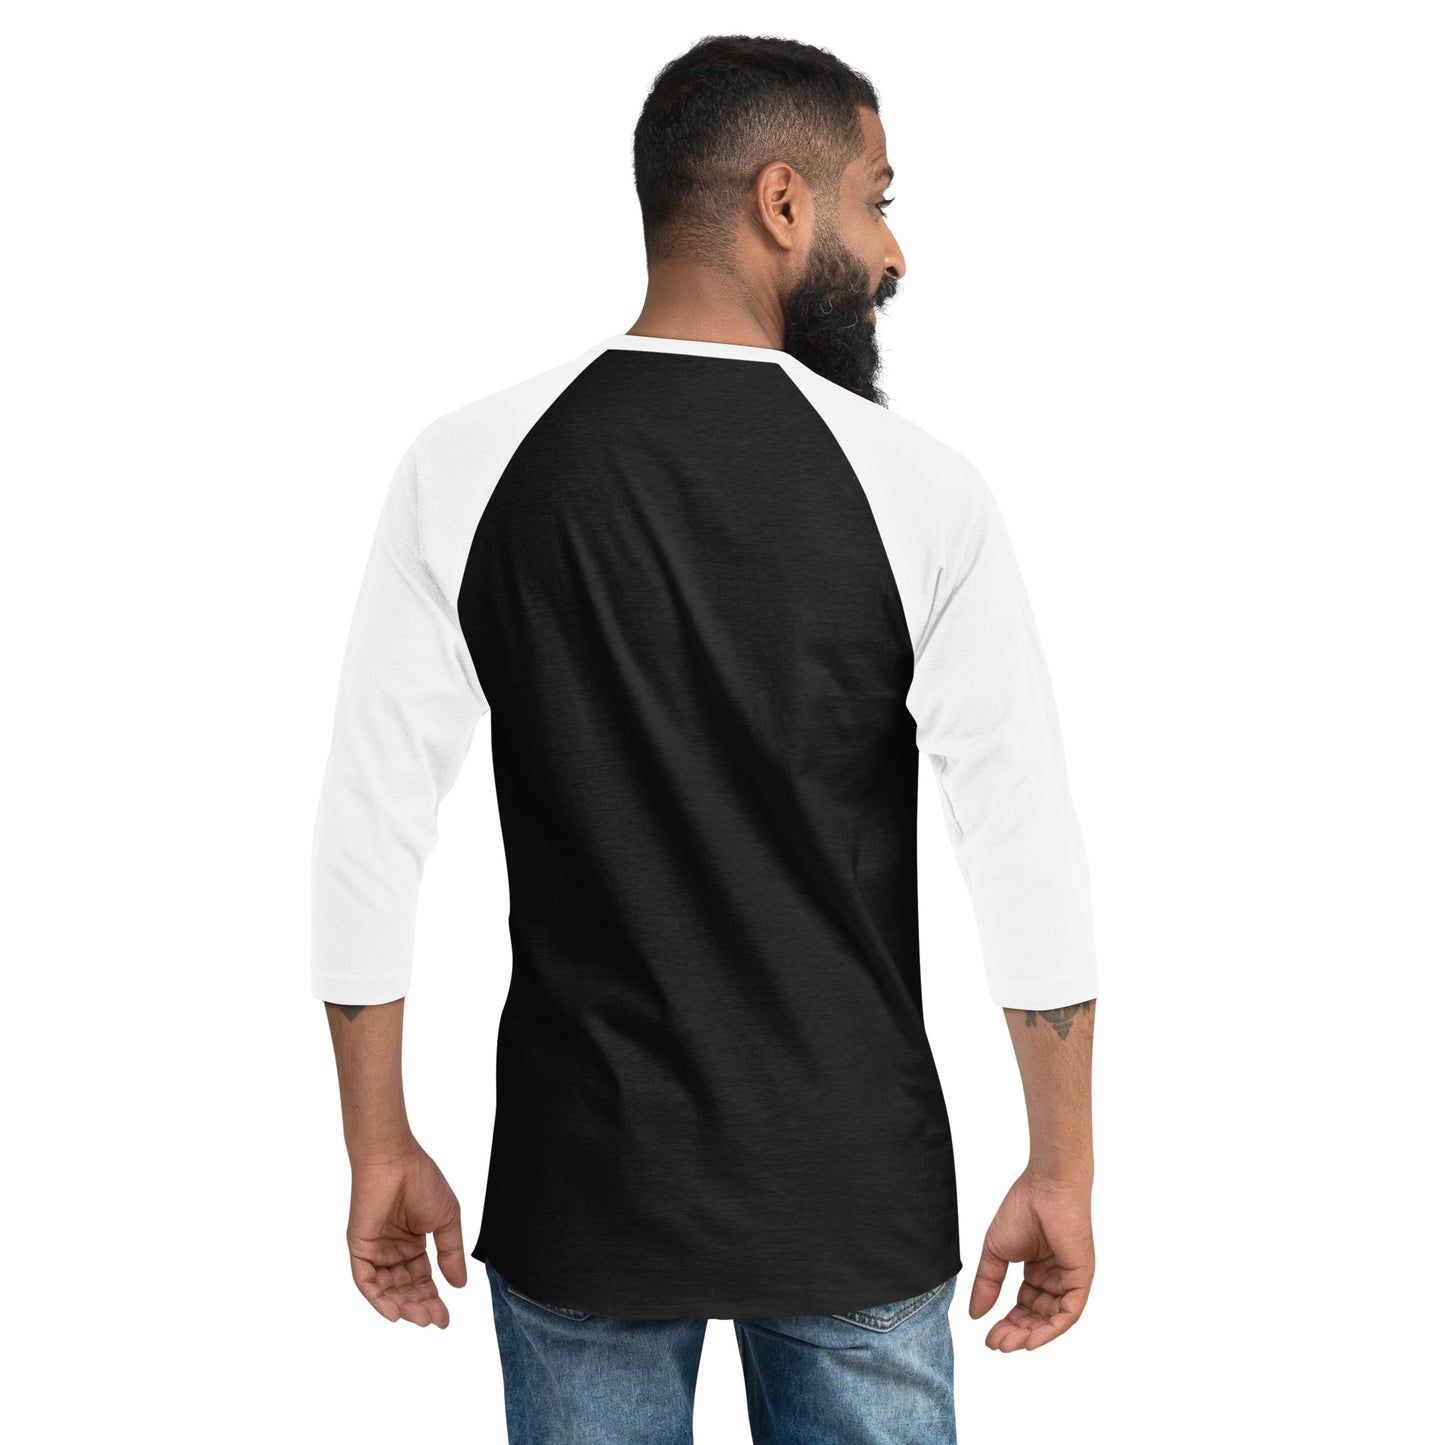 BOO 3/4 sleeve raglan shirt